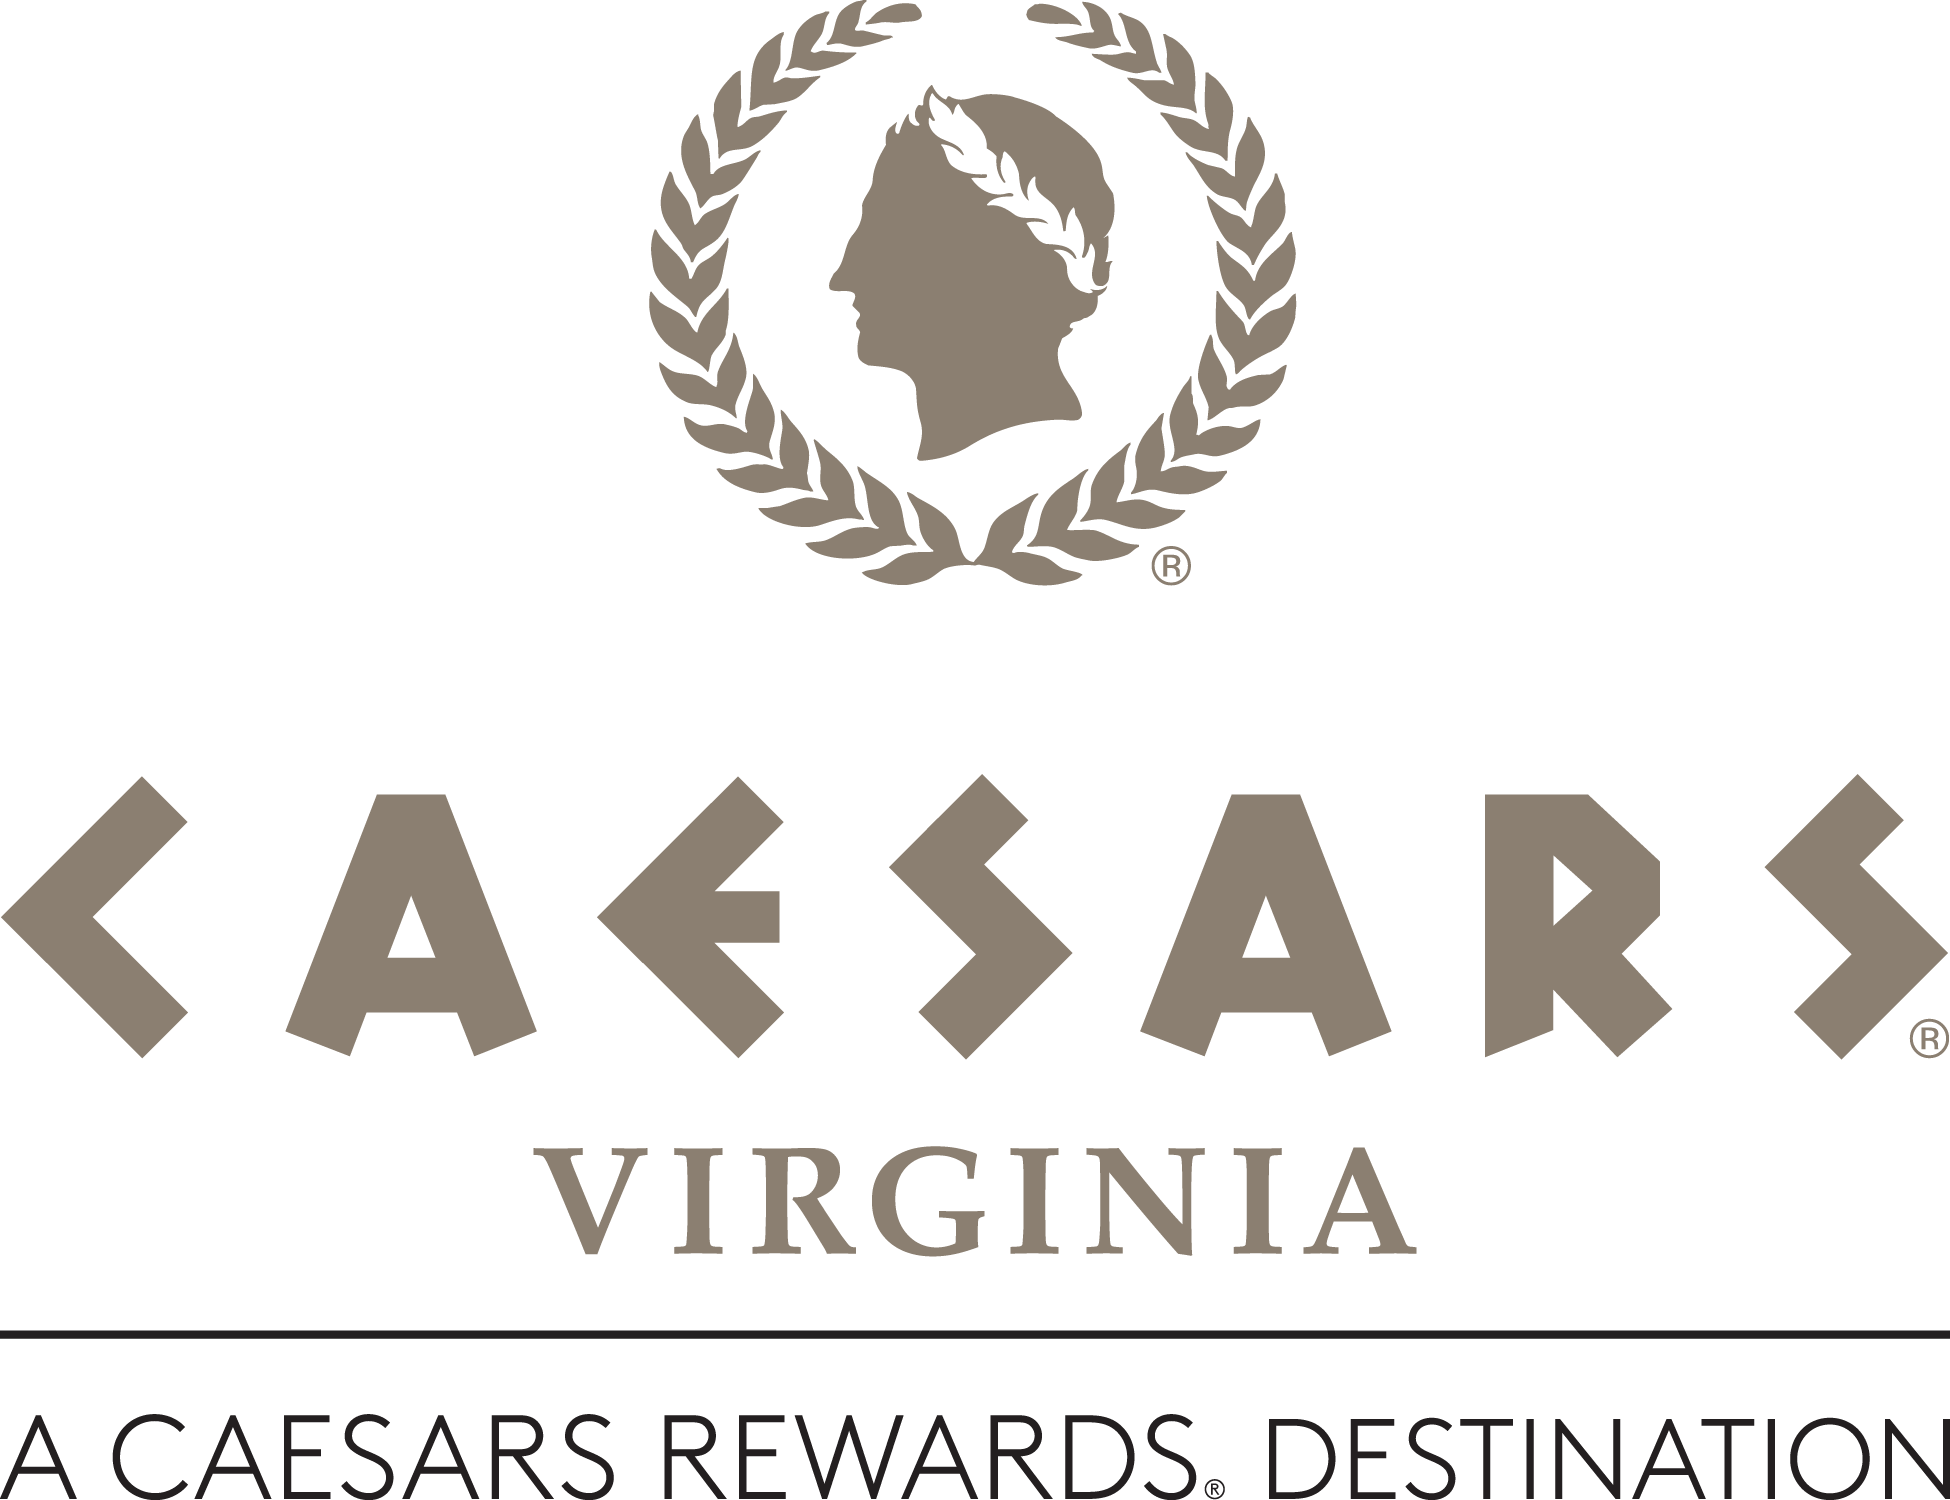 Caesars_Virginia_CRDestination_4c